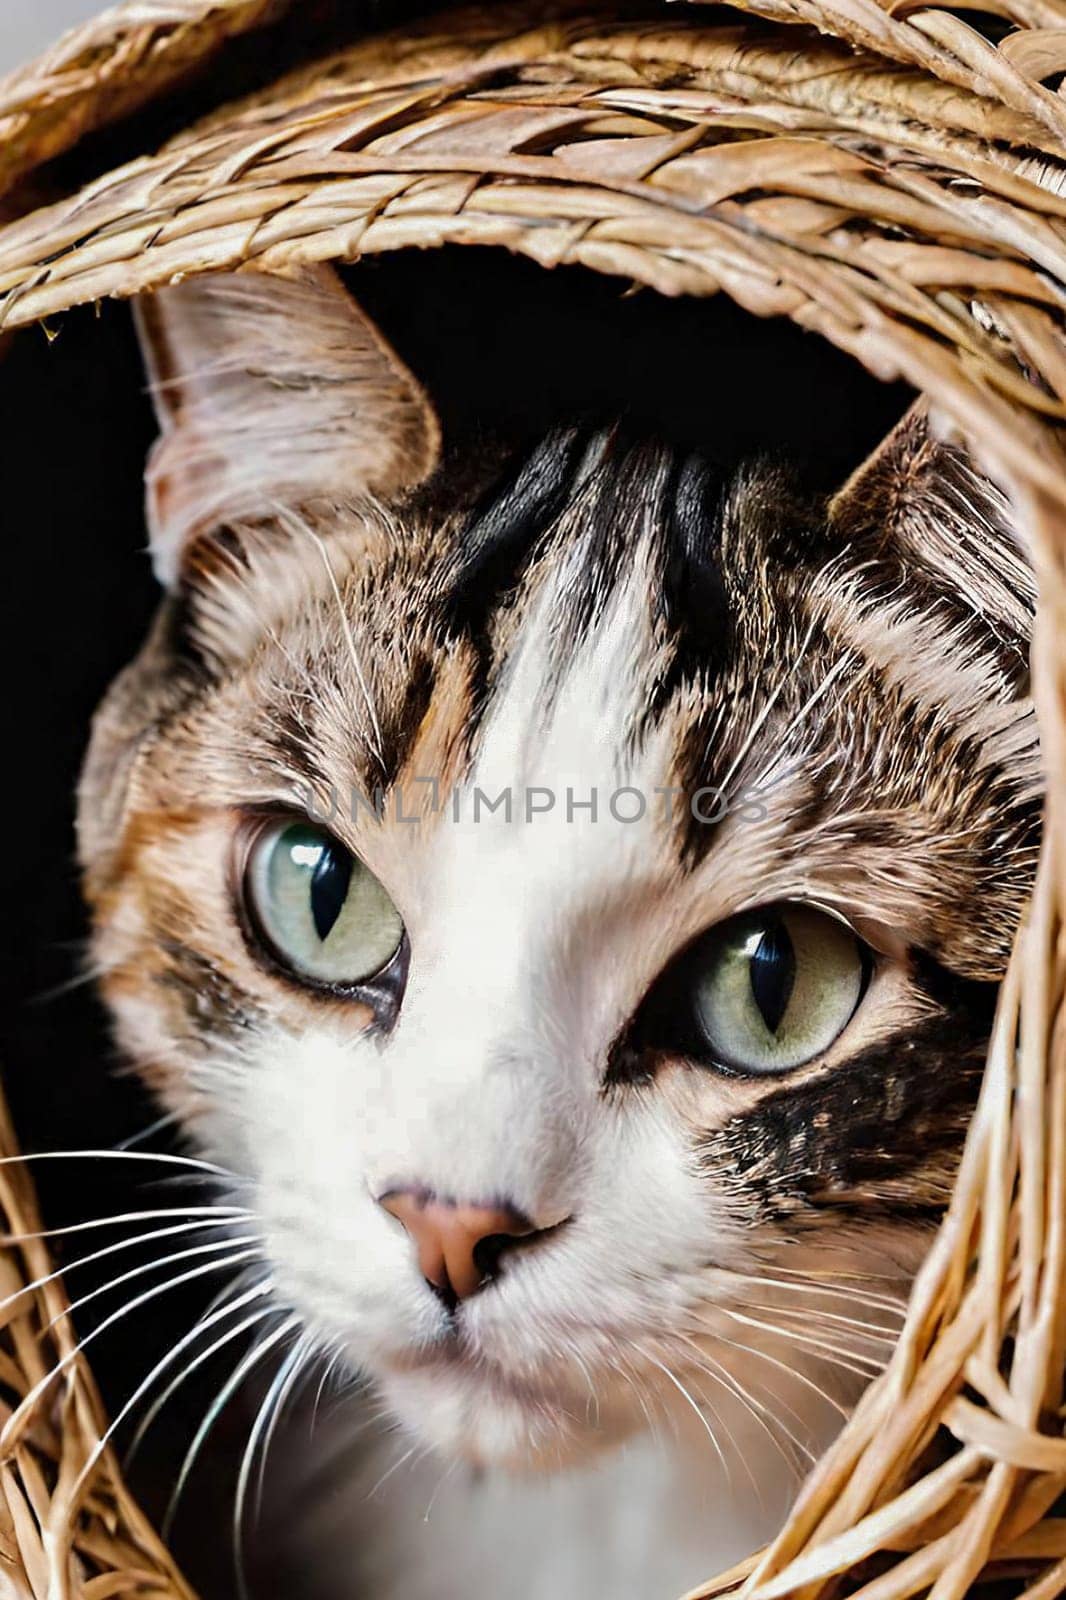 Portrait of a cute cat in a wicker basket.Beautiful cute cat in a wicker basket on background.